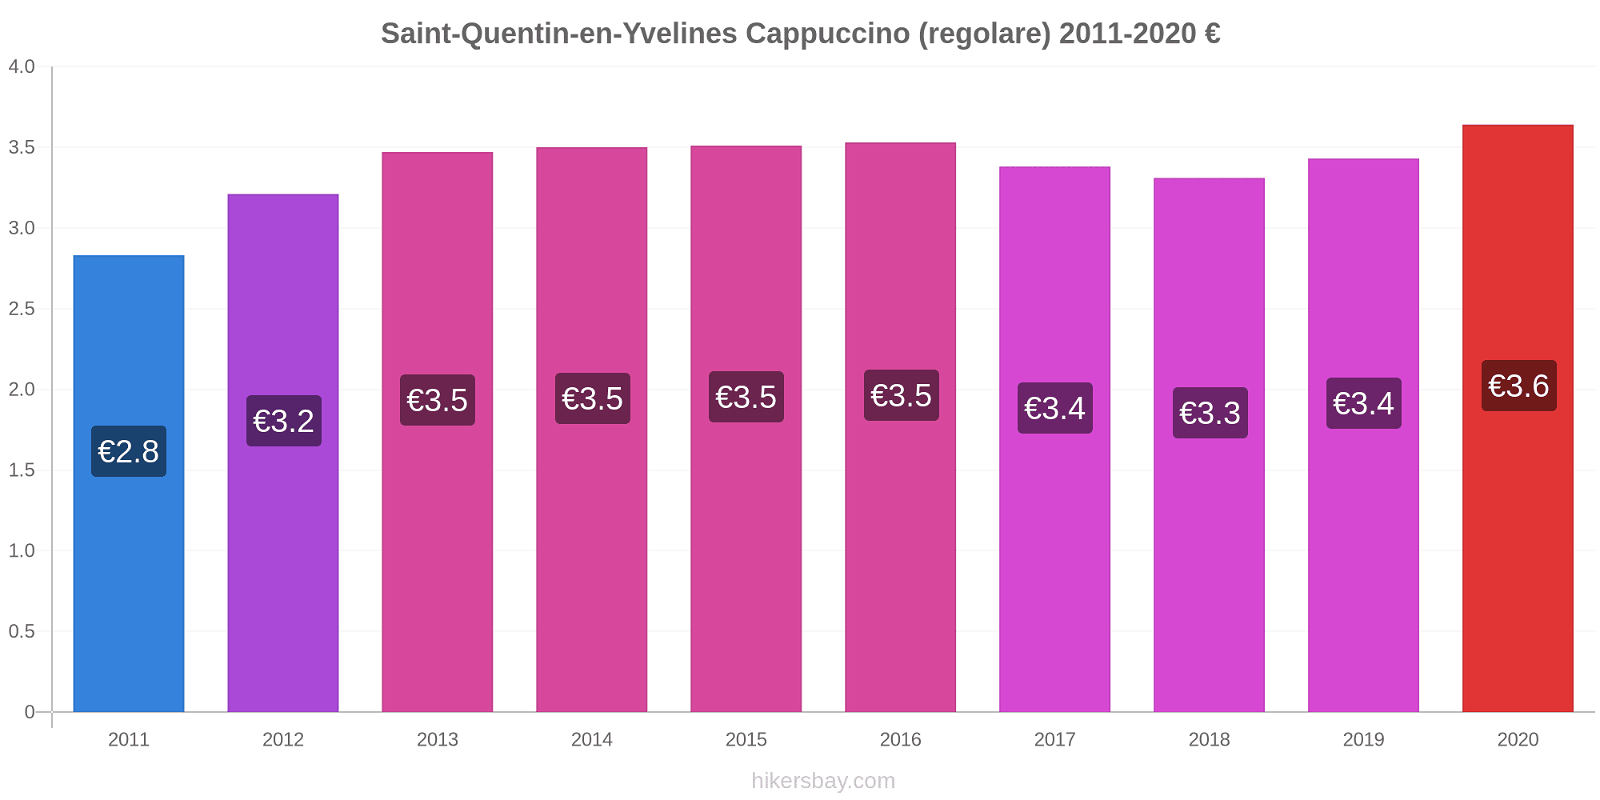 Saint-Quentin-en-Yvelines variazioni di prezzo Cappuccino (normale) hikersbay.com